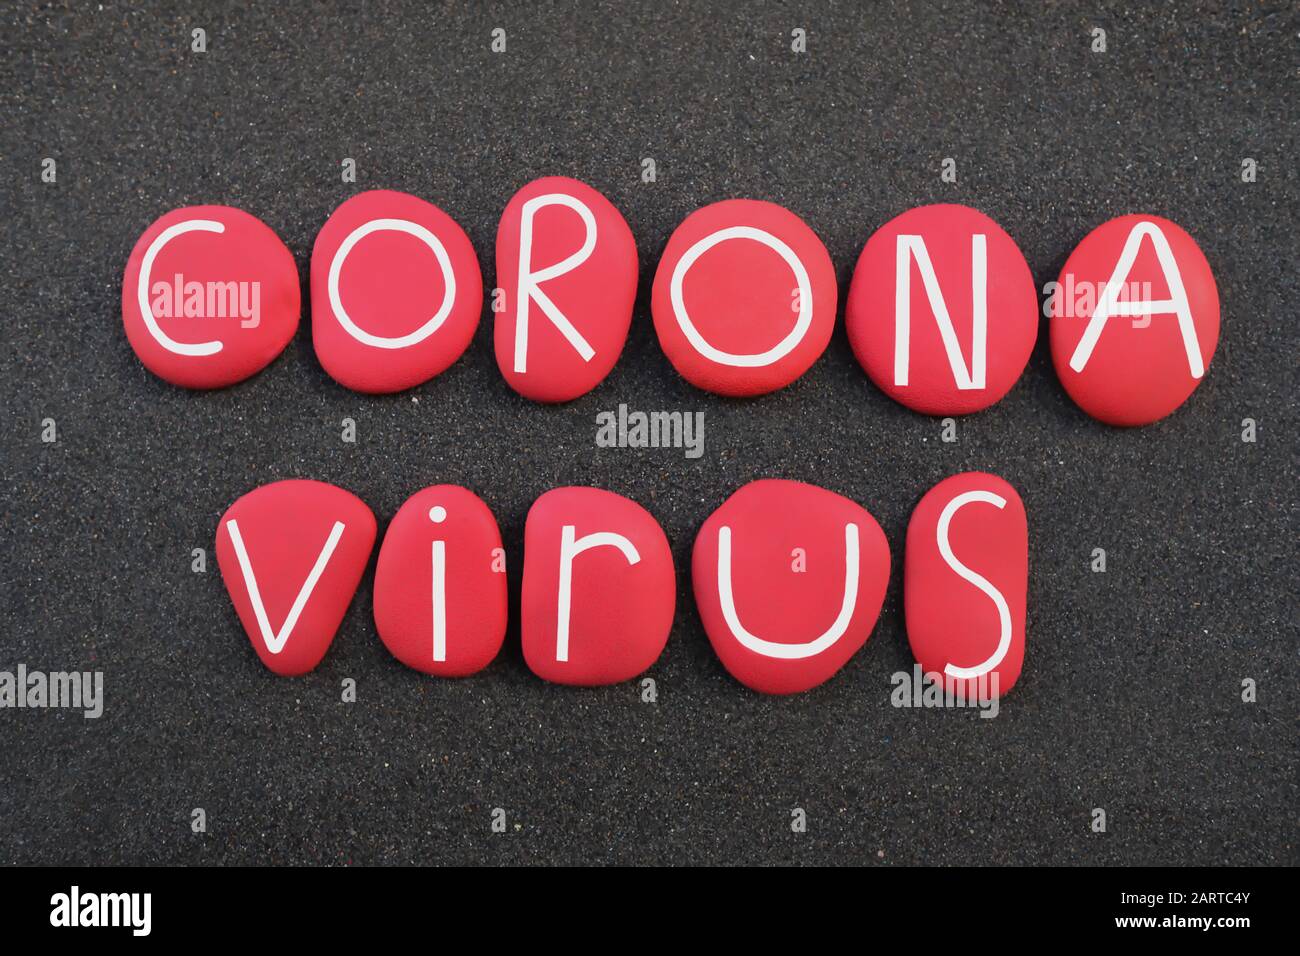 Coronavirus, virus infeccioso de la bronquitis palabra compuesta de letras de piedra de color rojo sobre arena volcánica negra Foto de stock